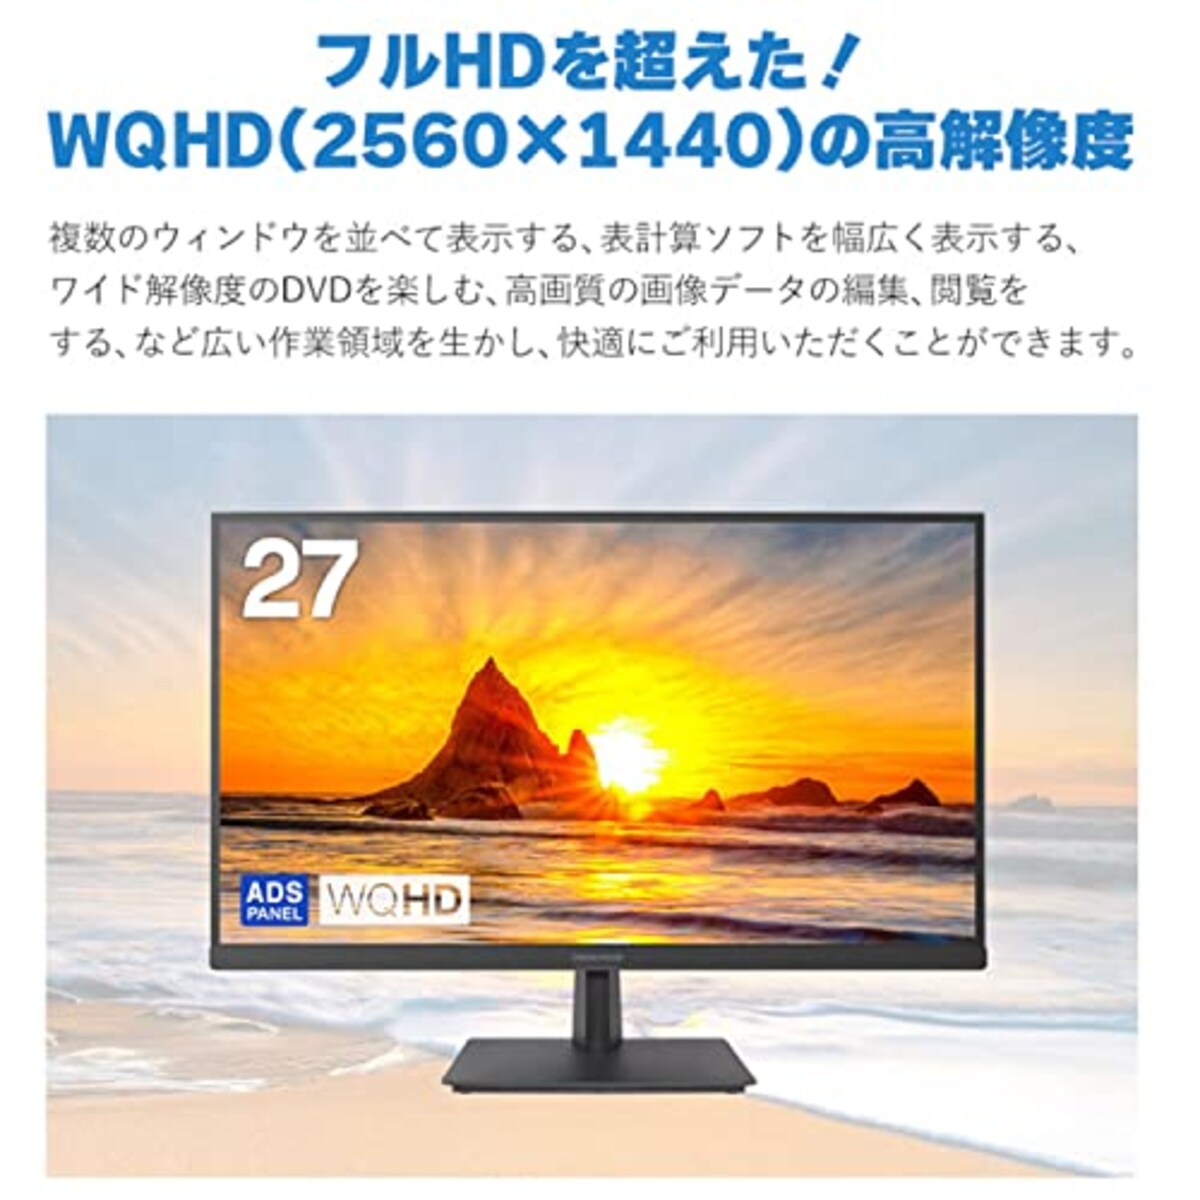  グリーンハウス 液晶ディスプレイ 27型 ワイド液晶 LED液晶 WQHD対応(2560×1440) 27インチ HDMI DisplayPort HDCP スピーカー ADSパネル 広視野角 低消費電力 ブルーライトカット 5 ブラック GH-ELCW27WB-BK画像3 